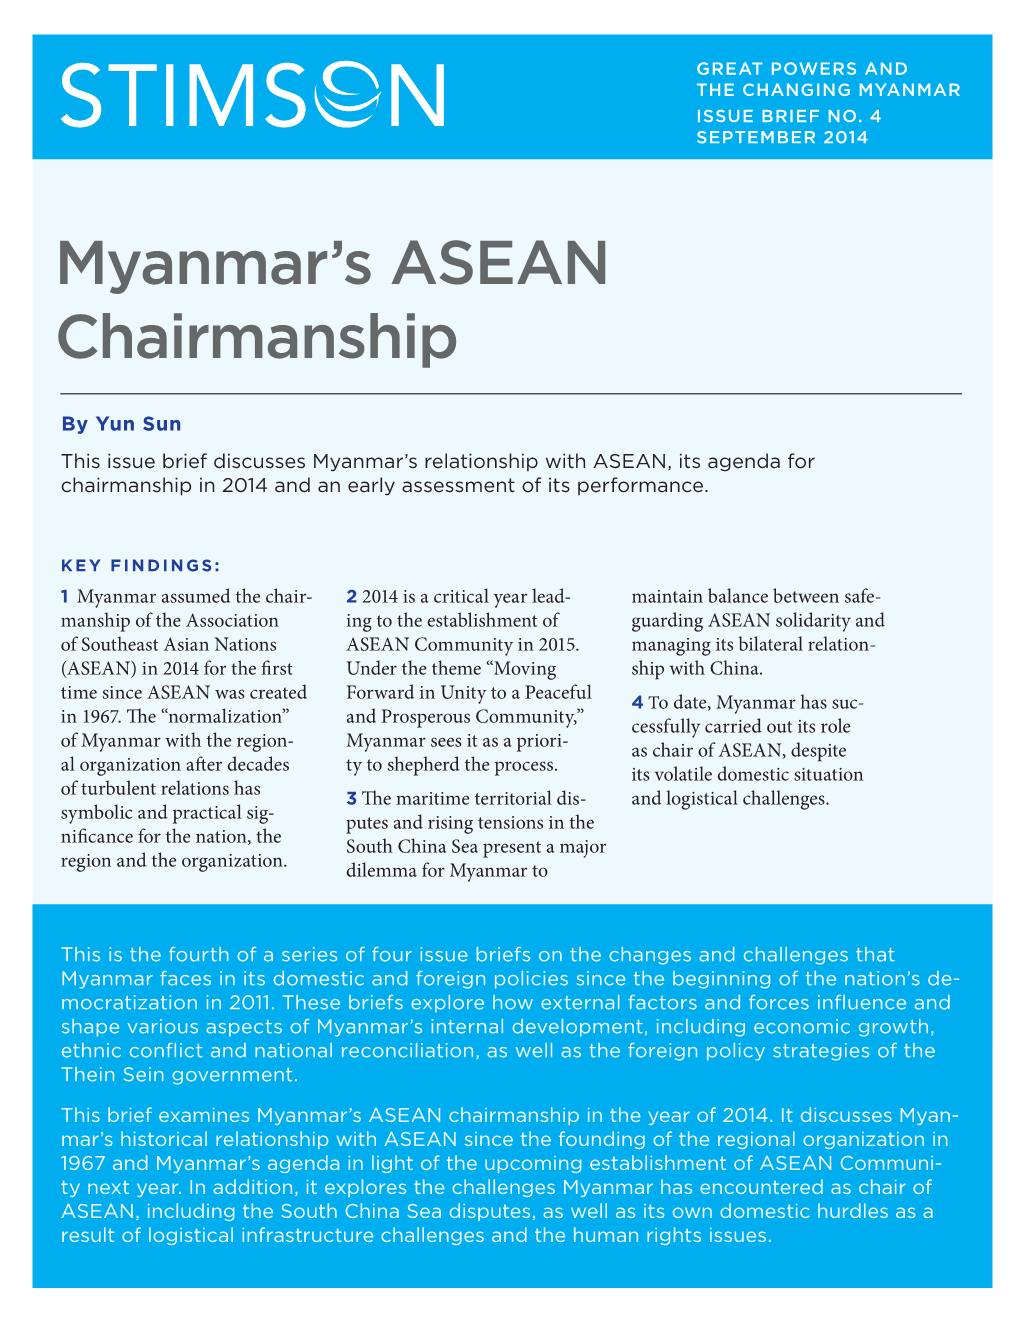 Myanmar's ASEAN Chairmanship